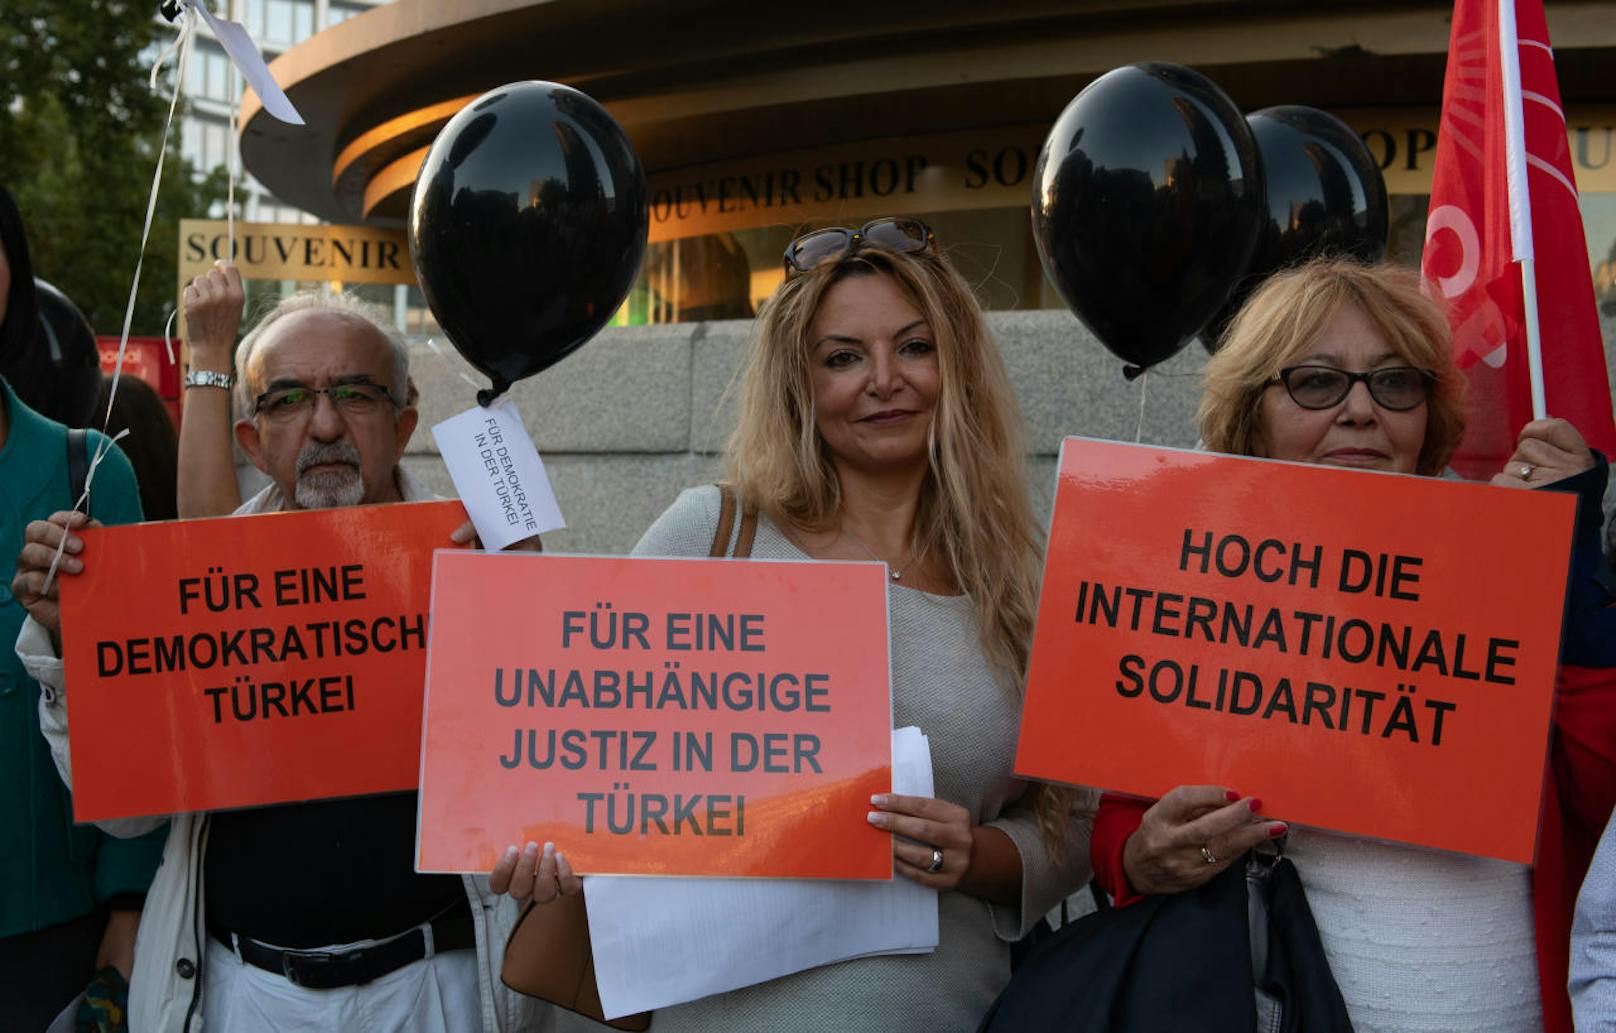 "Für eine unabhängige Justiz in der Türkei" und "Für eine demokratische Türkei" fordern einige Protestler.